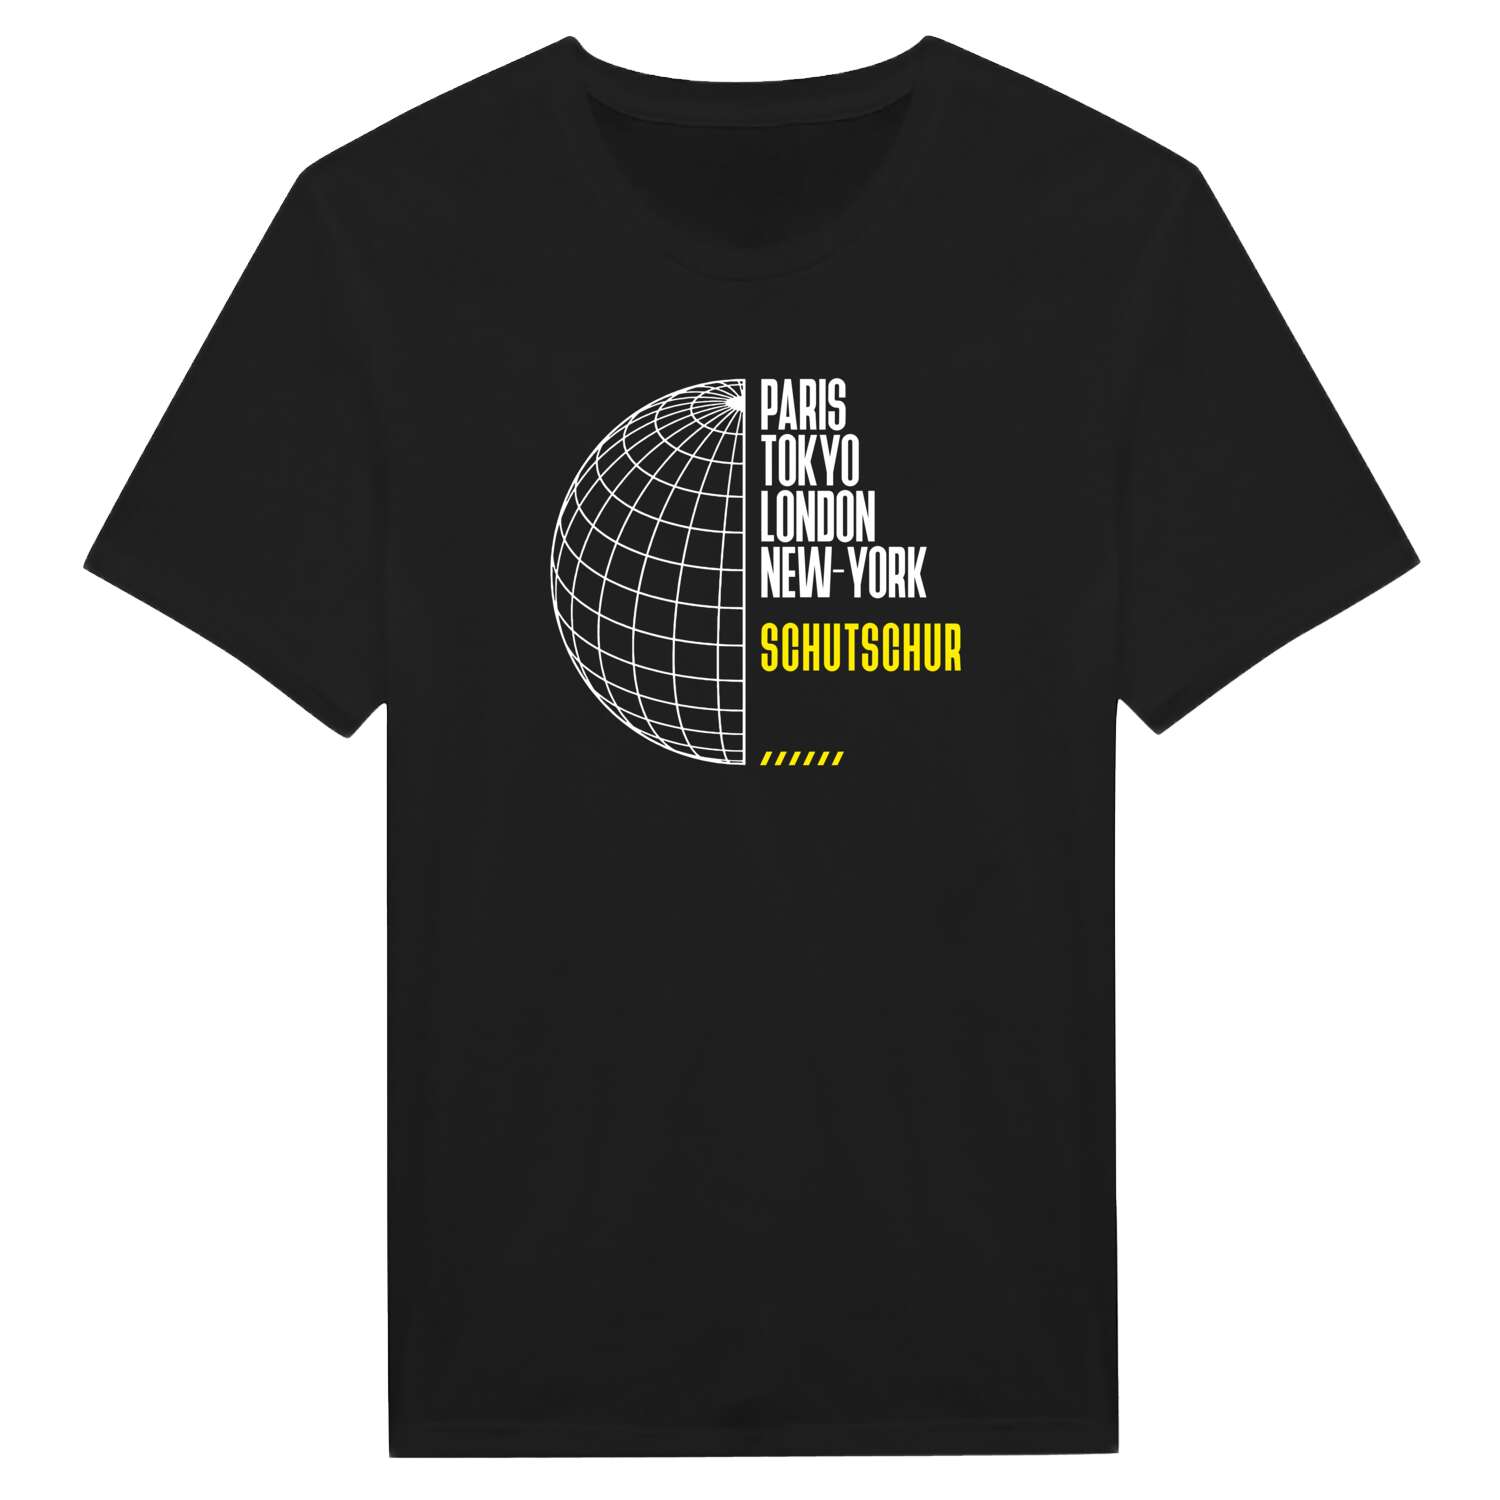 Schutschur T-Shirt »Paris Tokyo London«